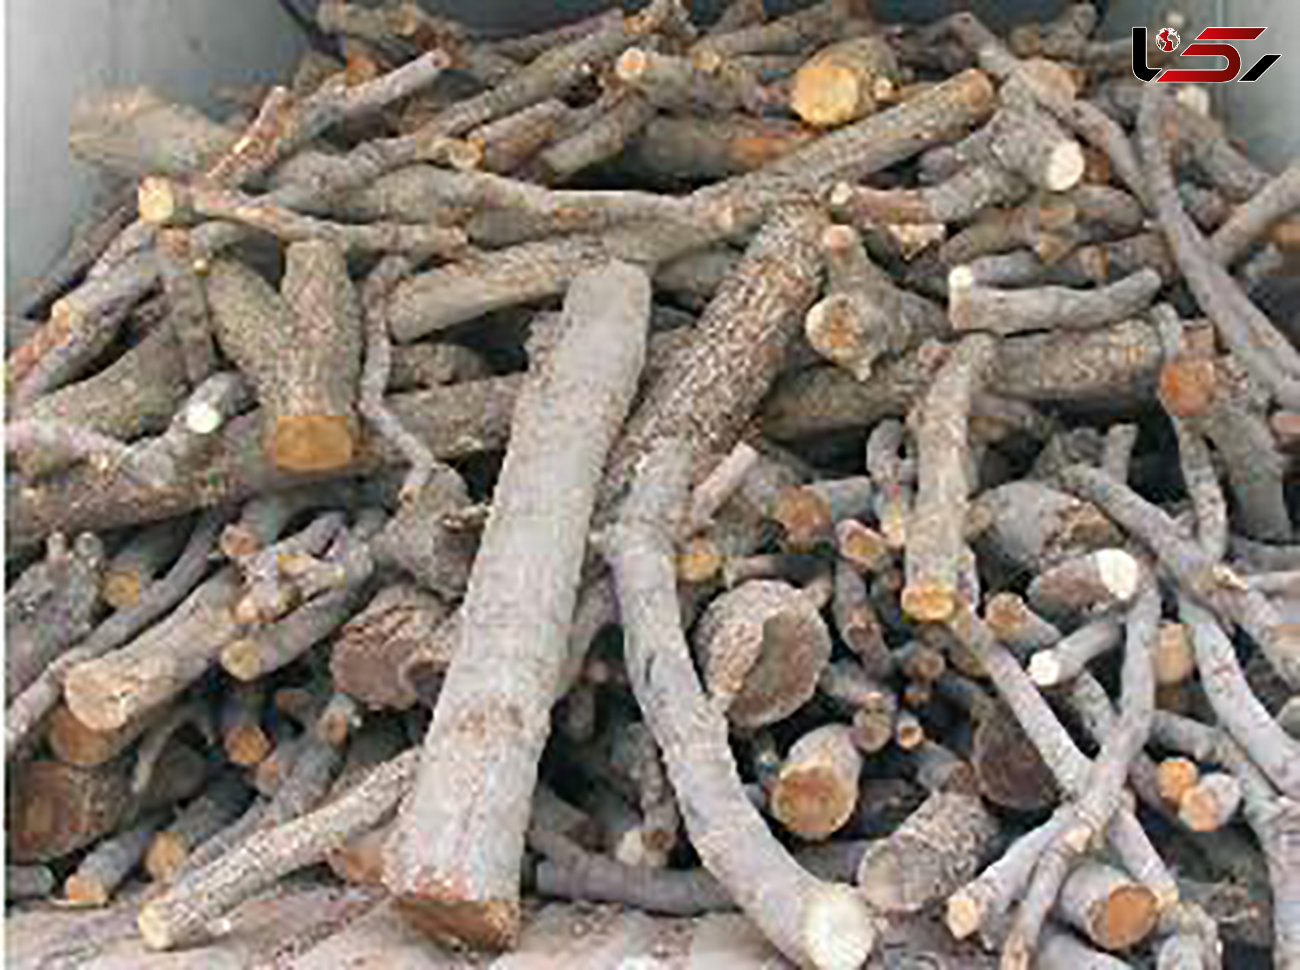 کشف 20 تن چوب قاچاق در کبودراهنگ